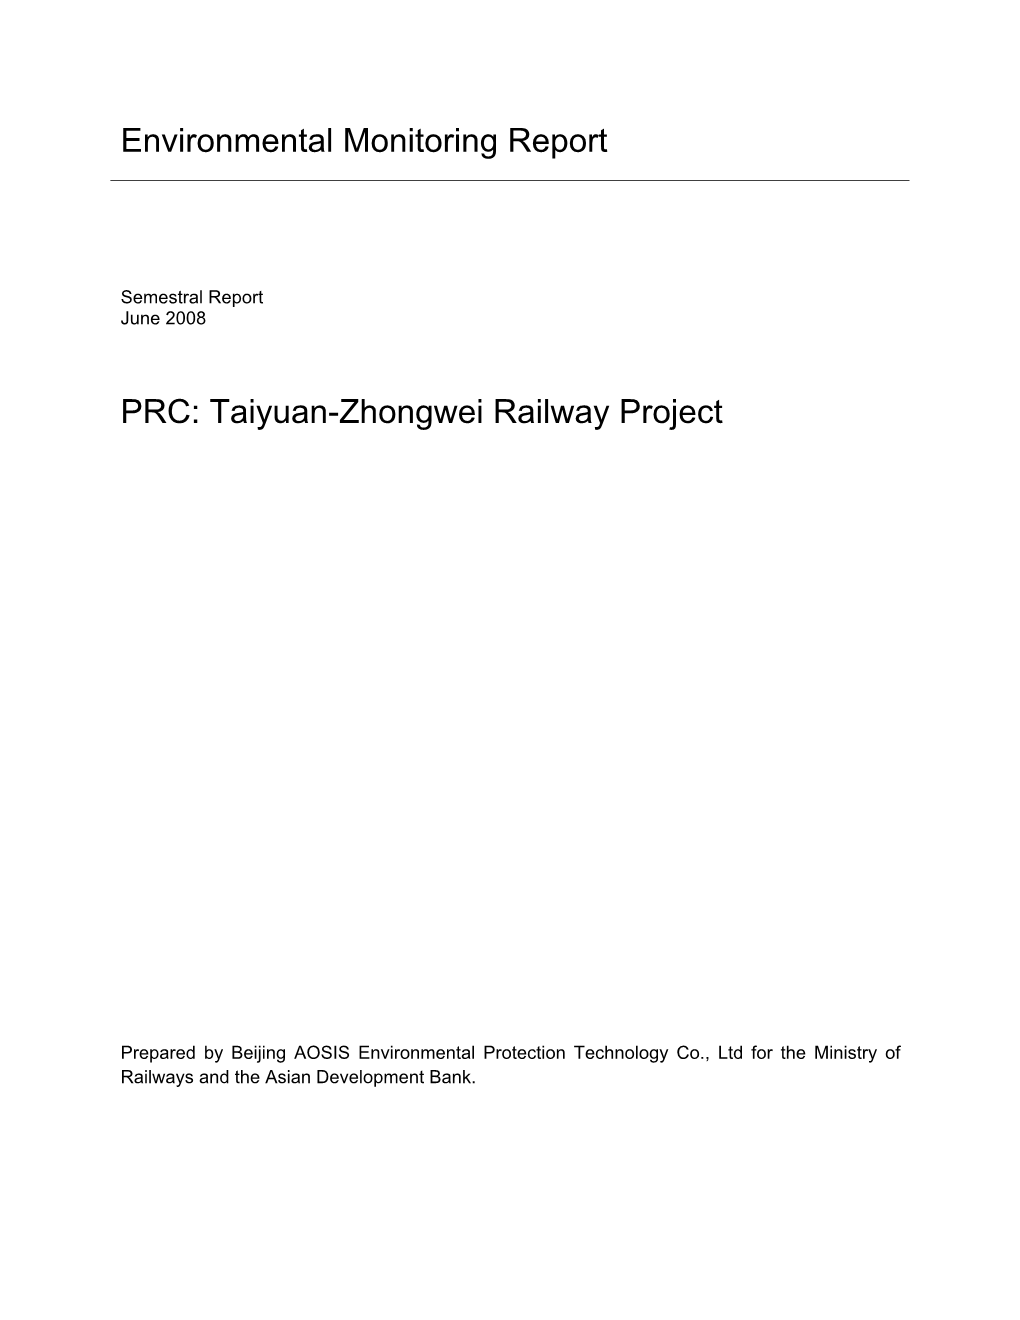 Taiyuan-Zhongwei Railway Project